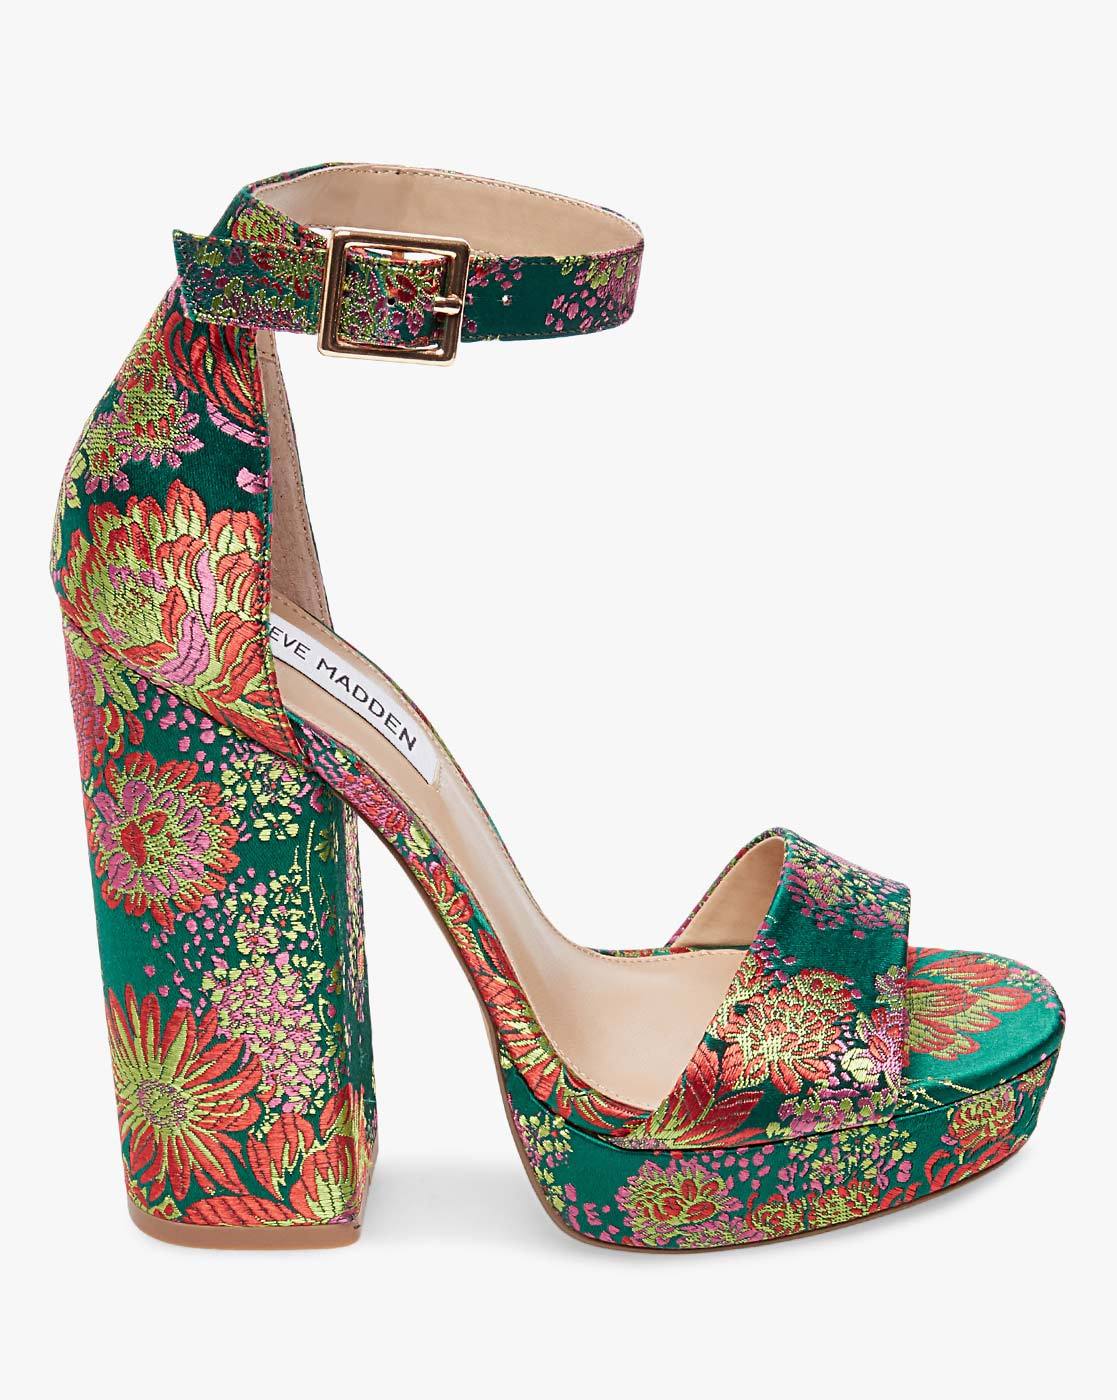 steve madden floral heels